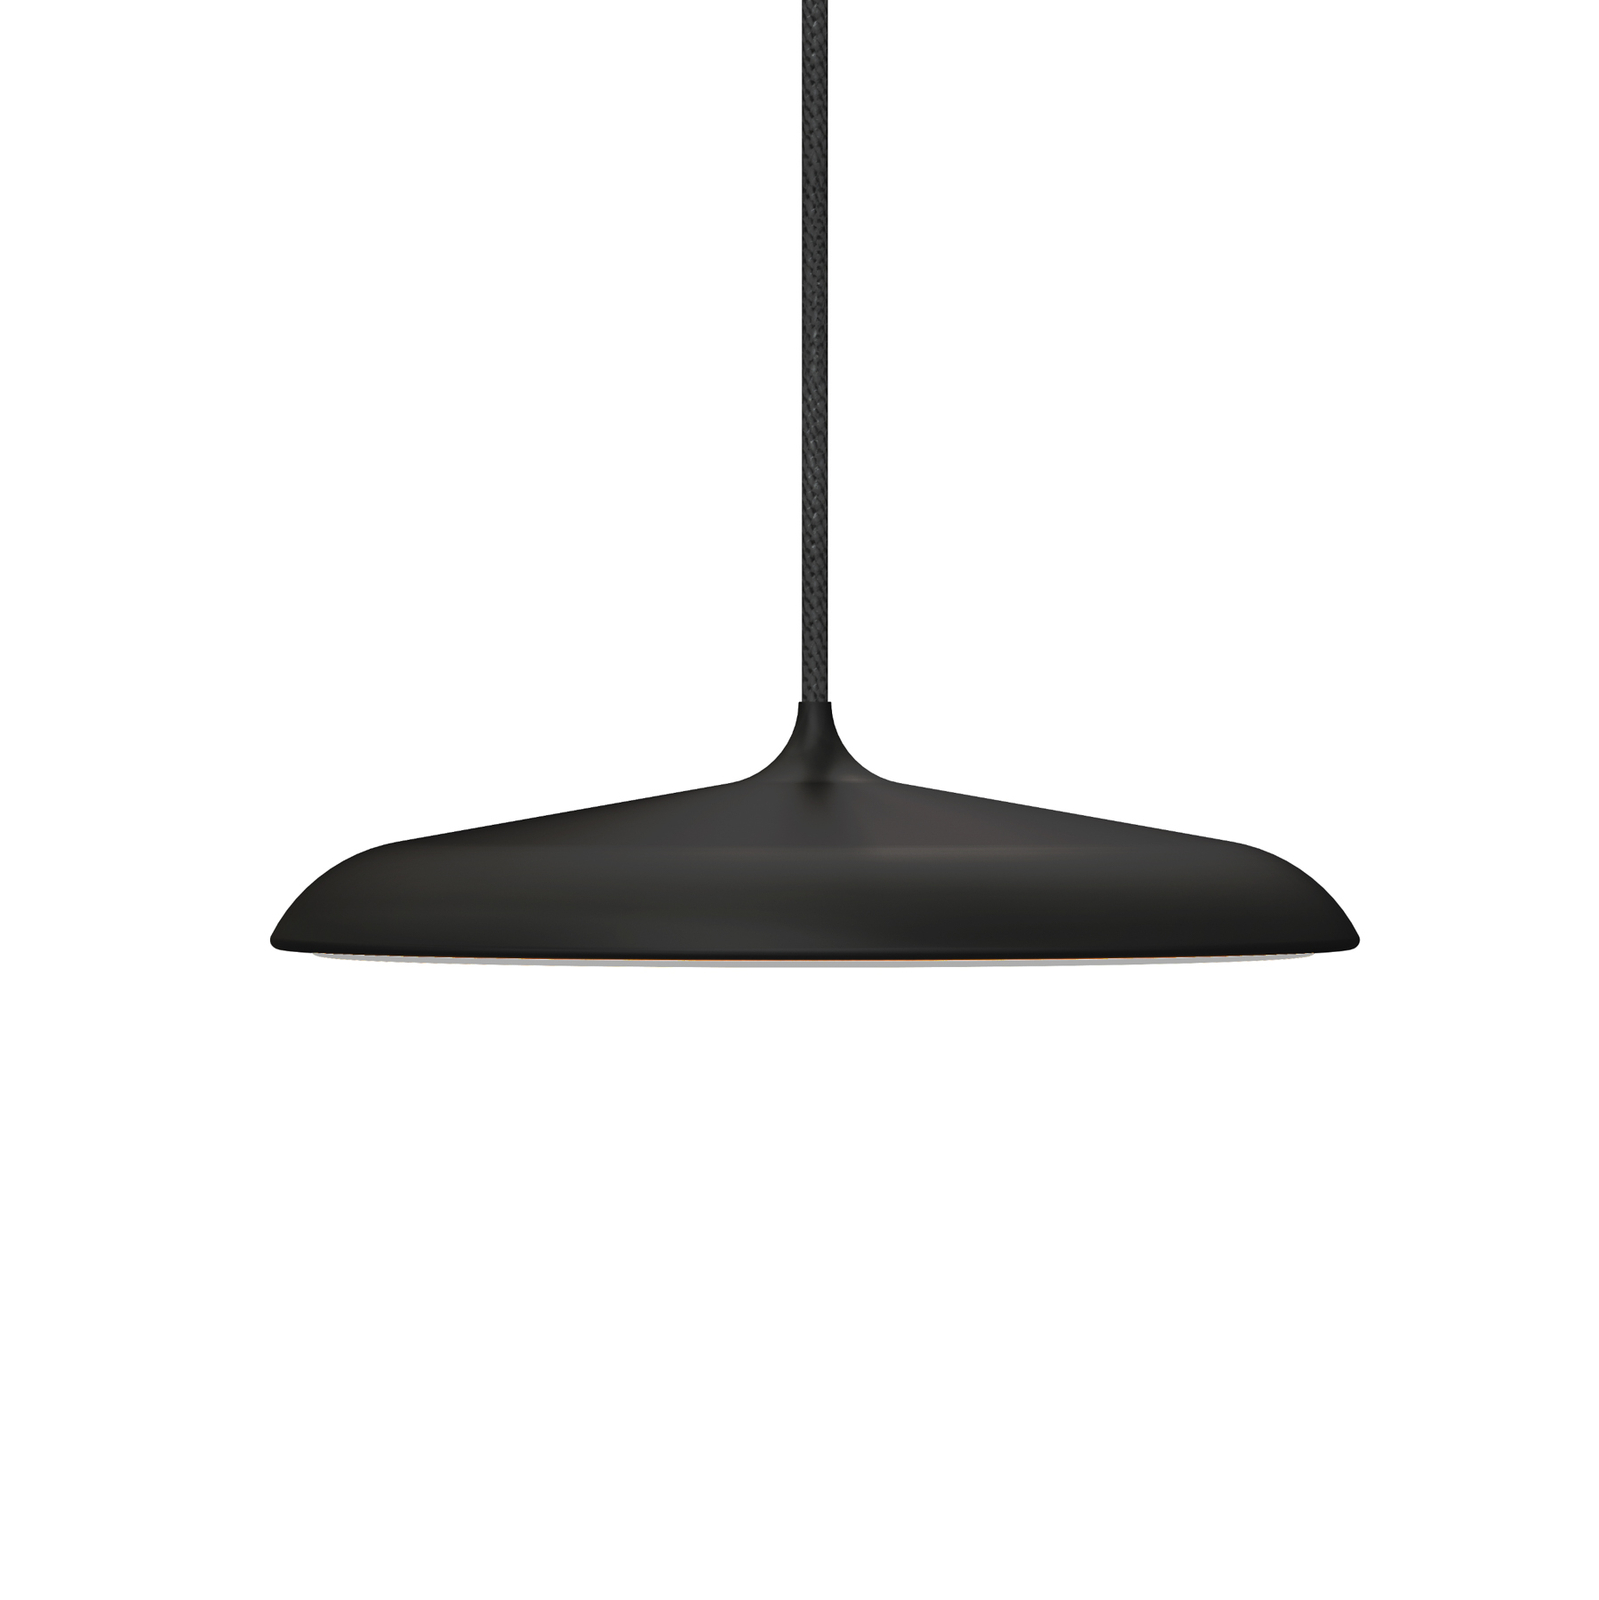 LED závěsné světlo Artist, Ø 25cm, černá